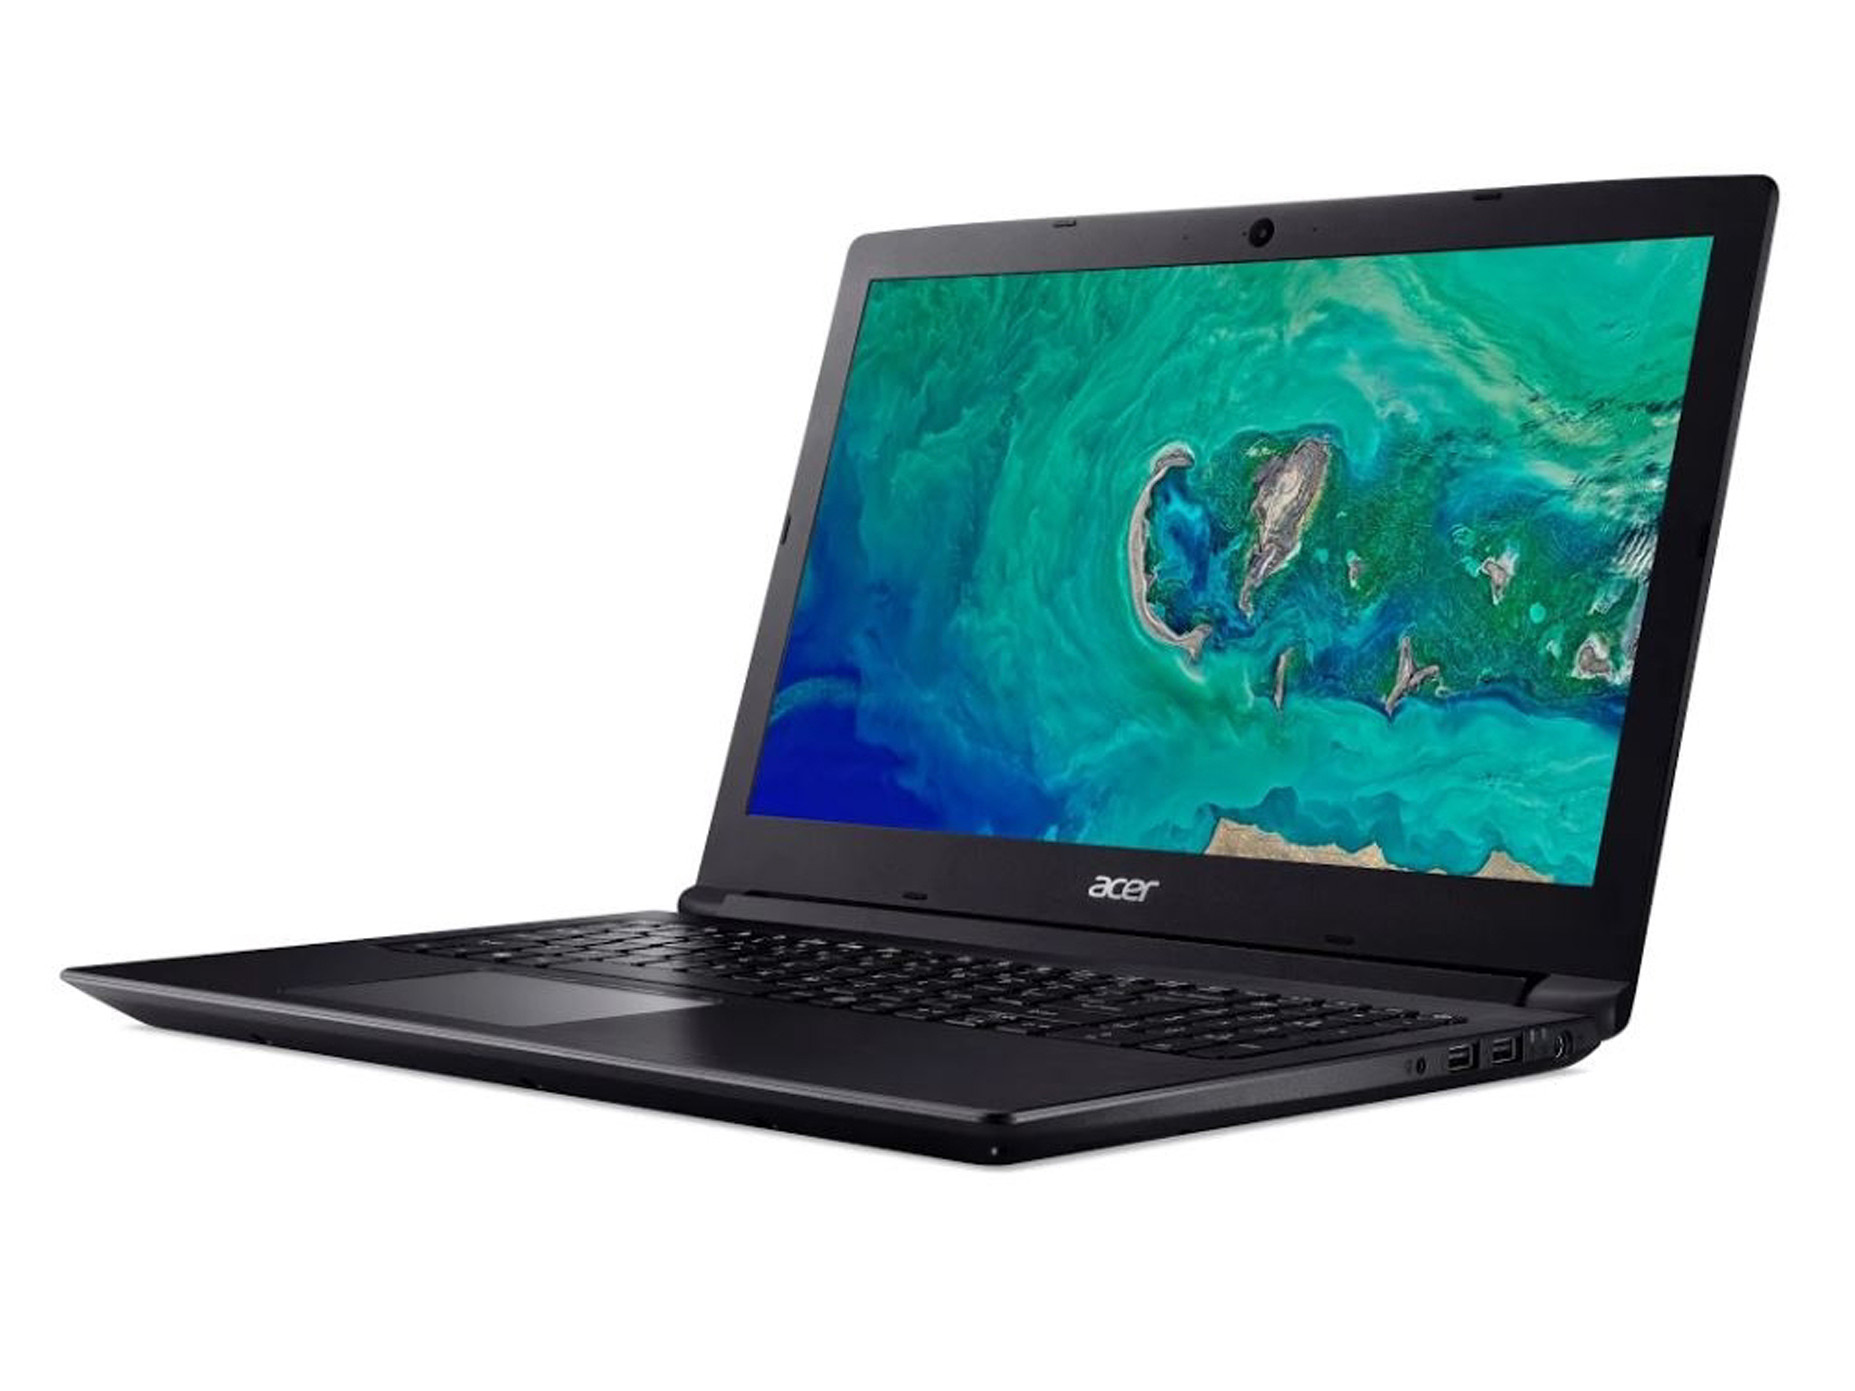 Harga Jual Acer Aspire 3 A315-41 Notebook AMD Ryzen 7-2700U 8GB 1TB 128GB  DOS 15.6